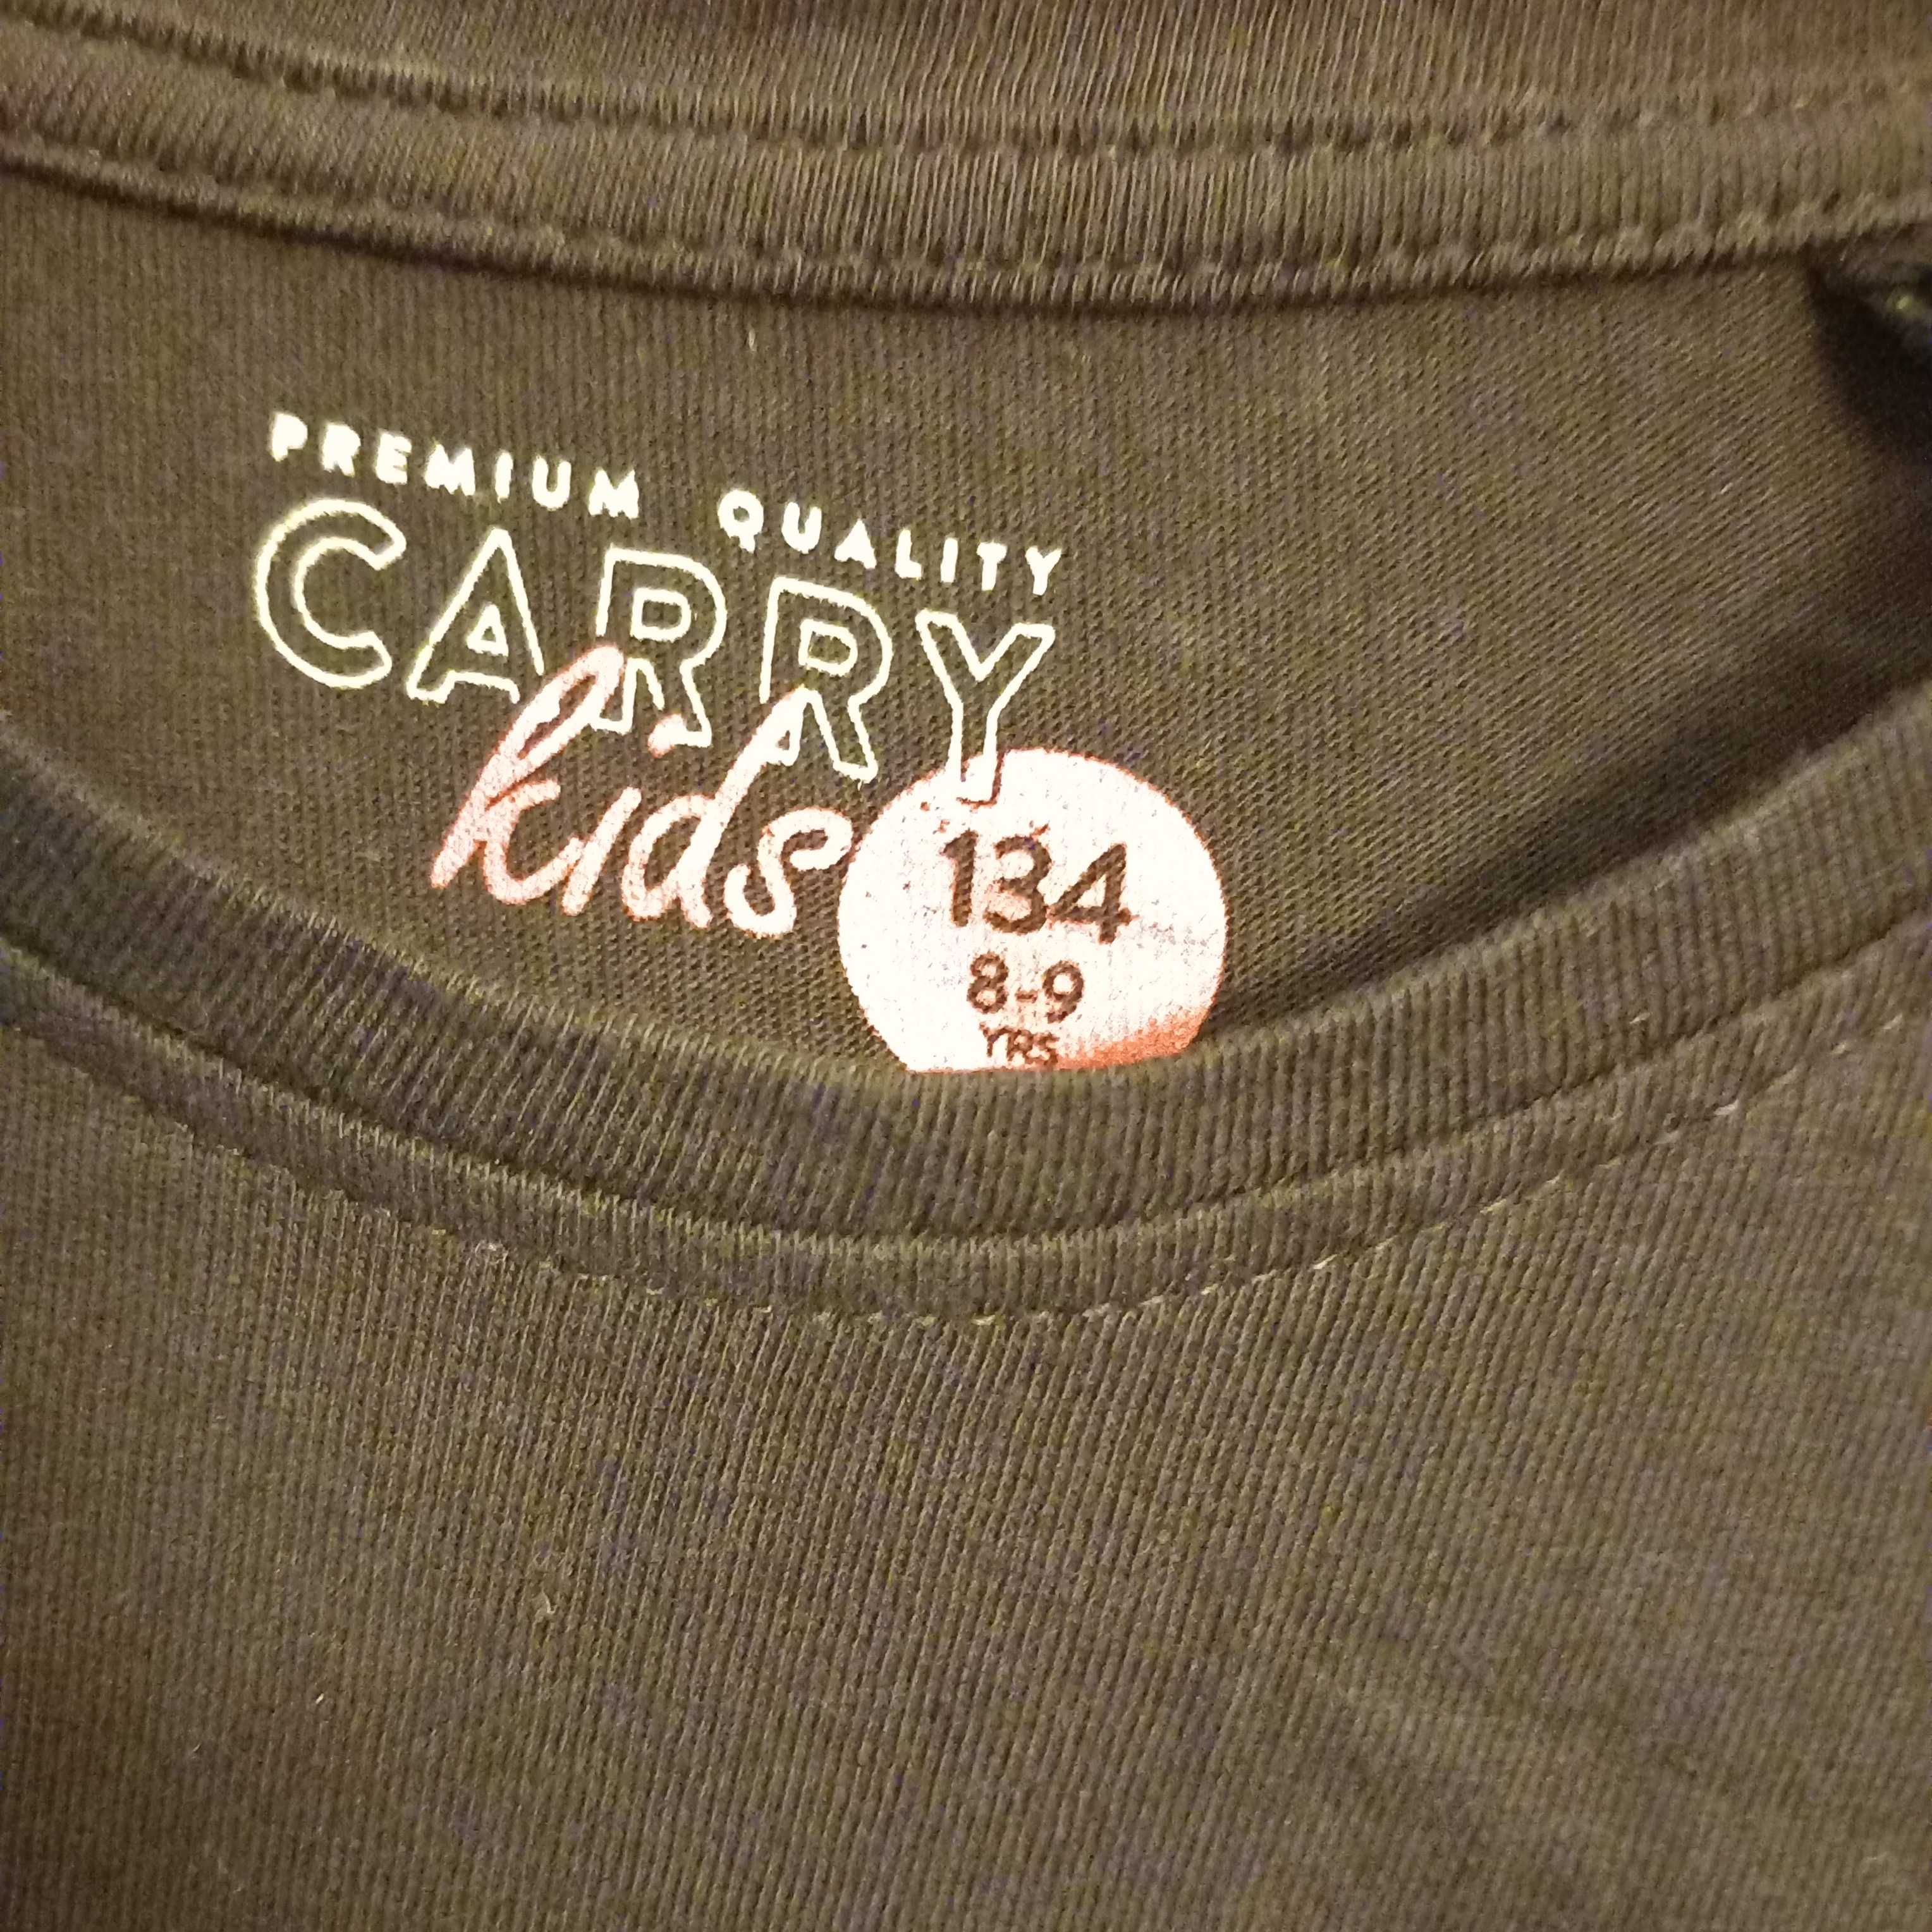 Czarna bluzka dziewczynka cekiny zmiana napisu CARRY kids 134